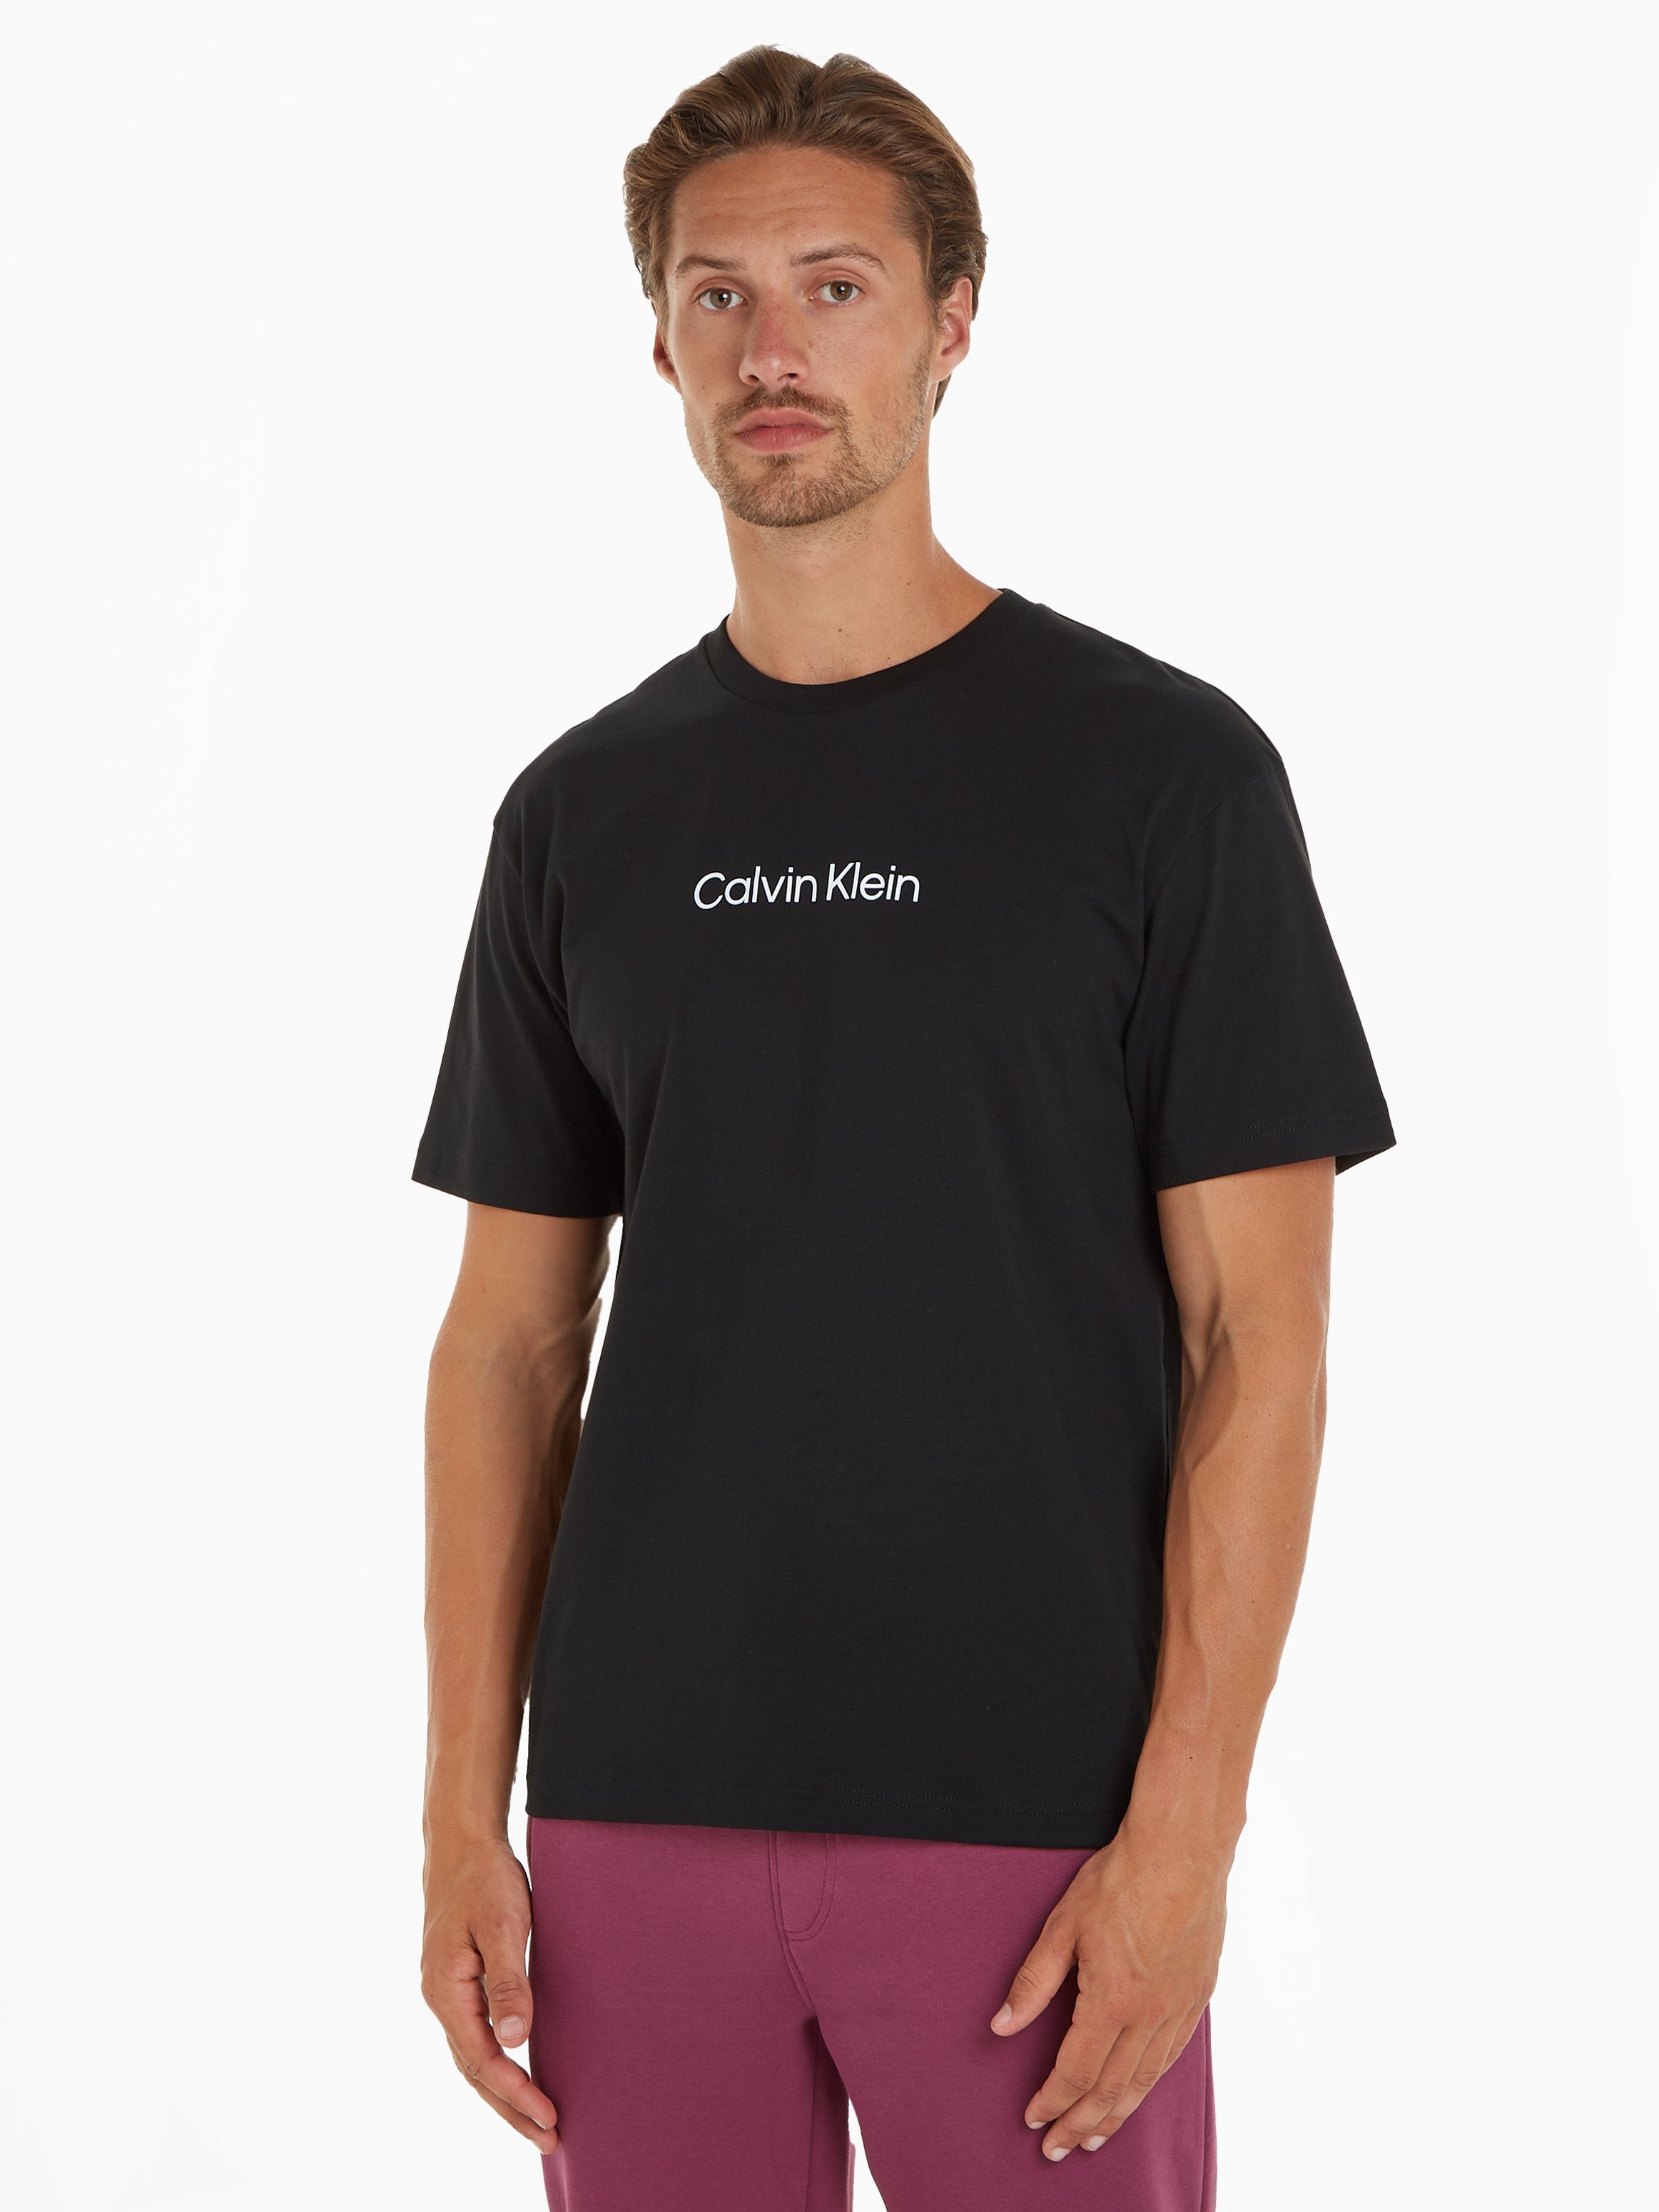 Calvin Klein T-Shirt HERO LOGO COMFORT T-SHIRT mit aufgedrucktem Markenlabel schwarz | T-Shirts